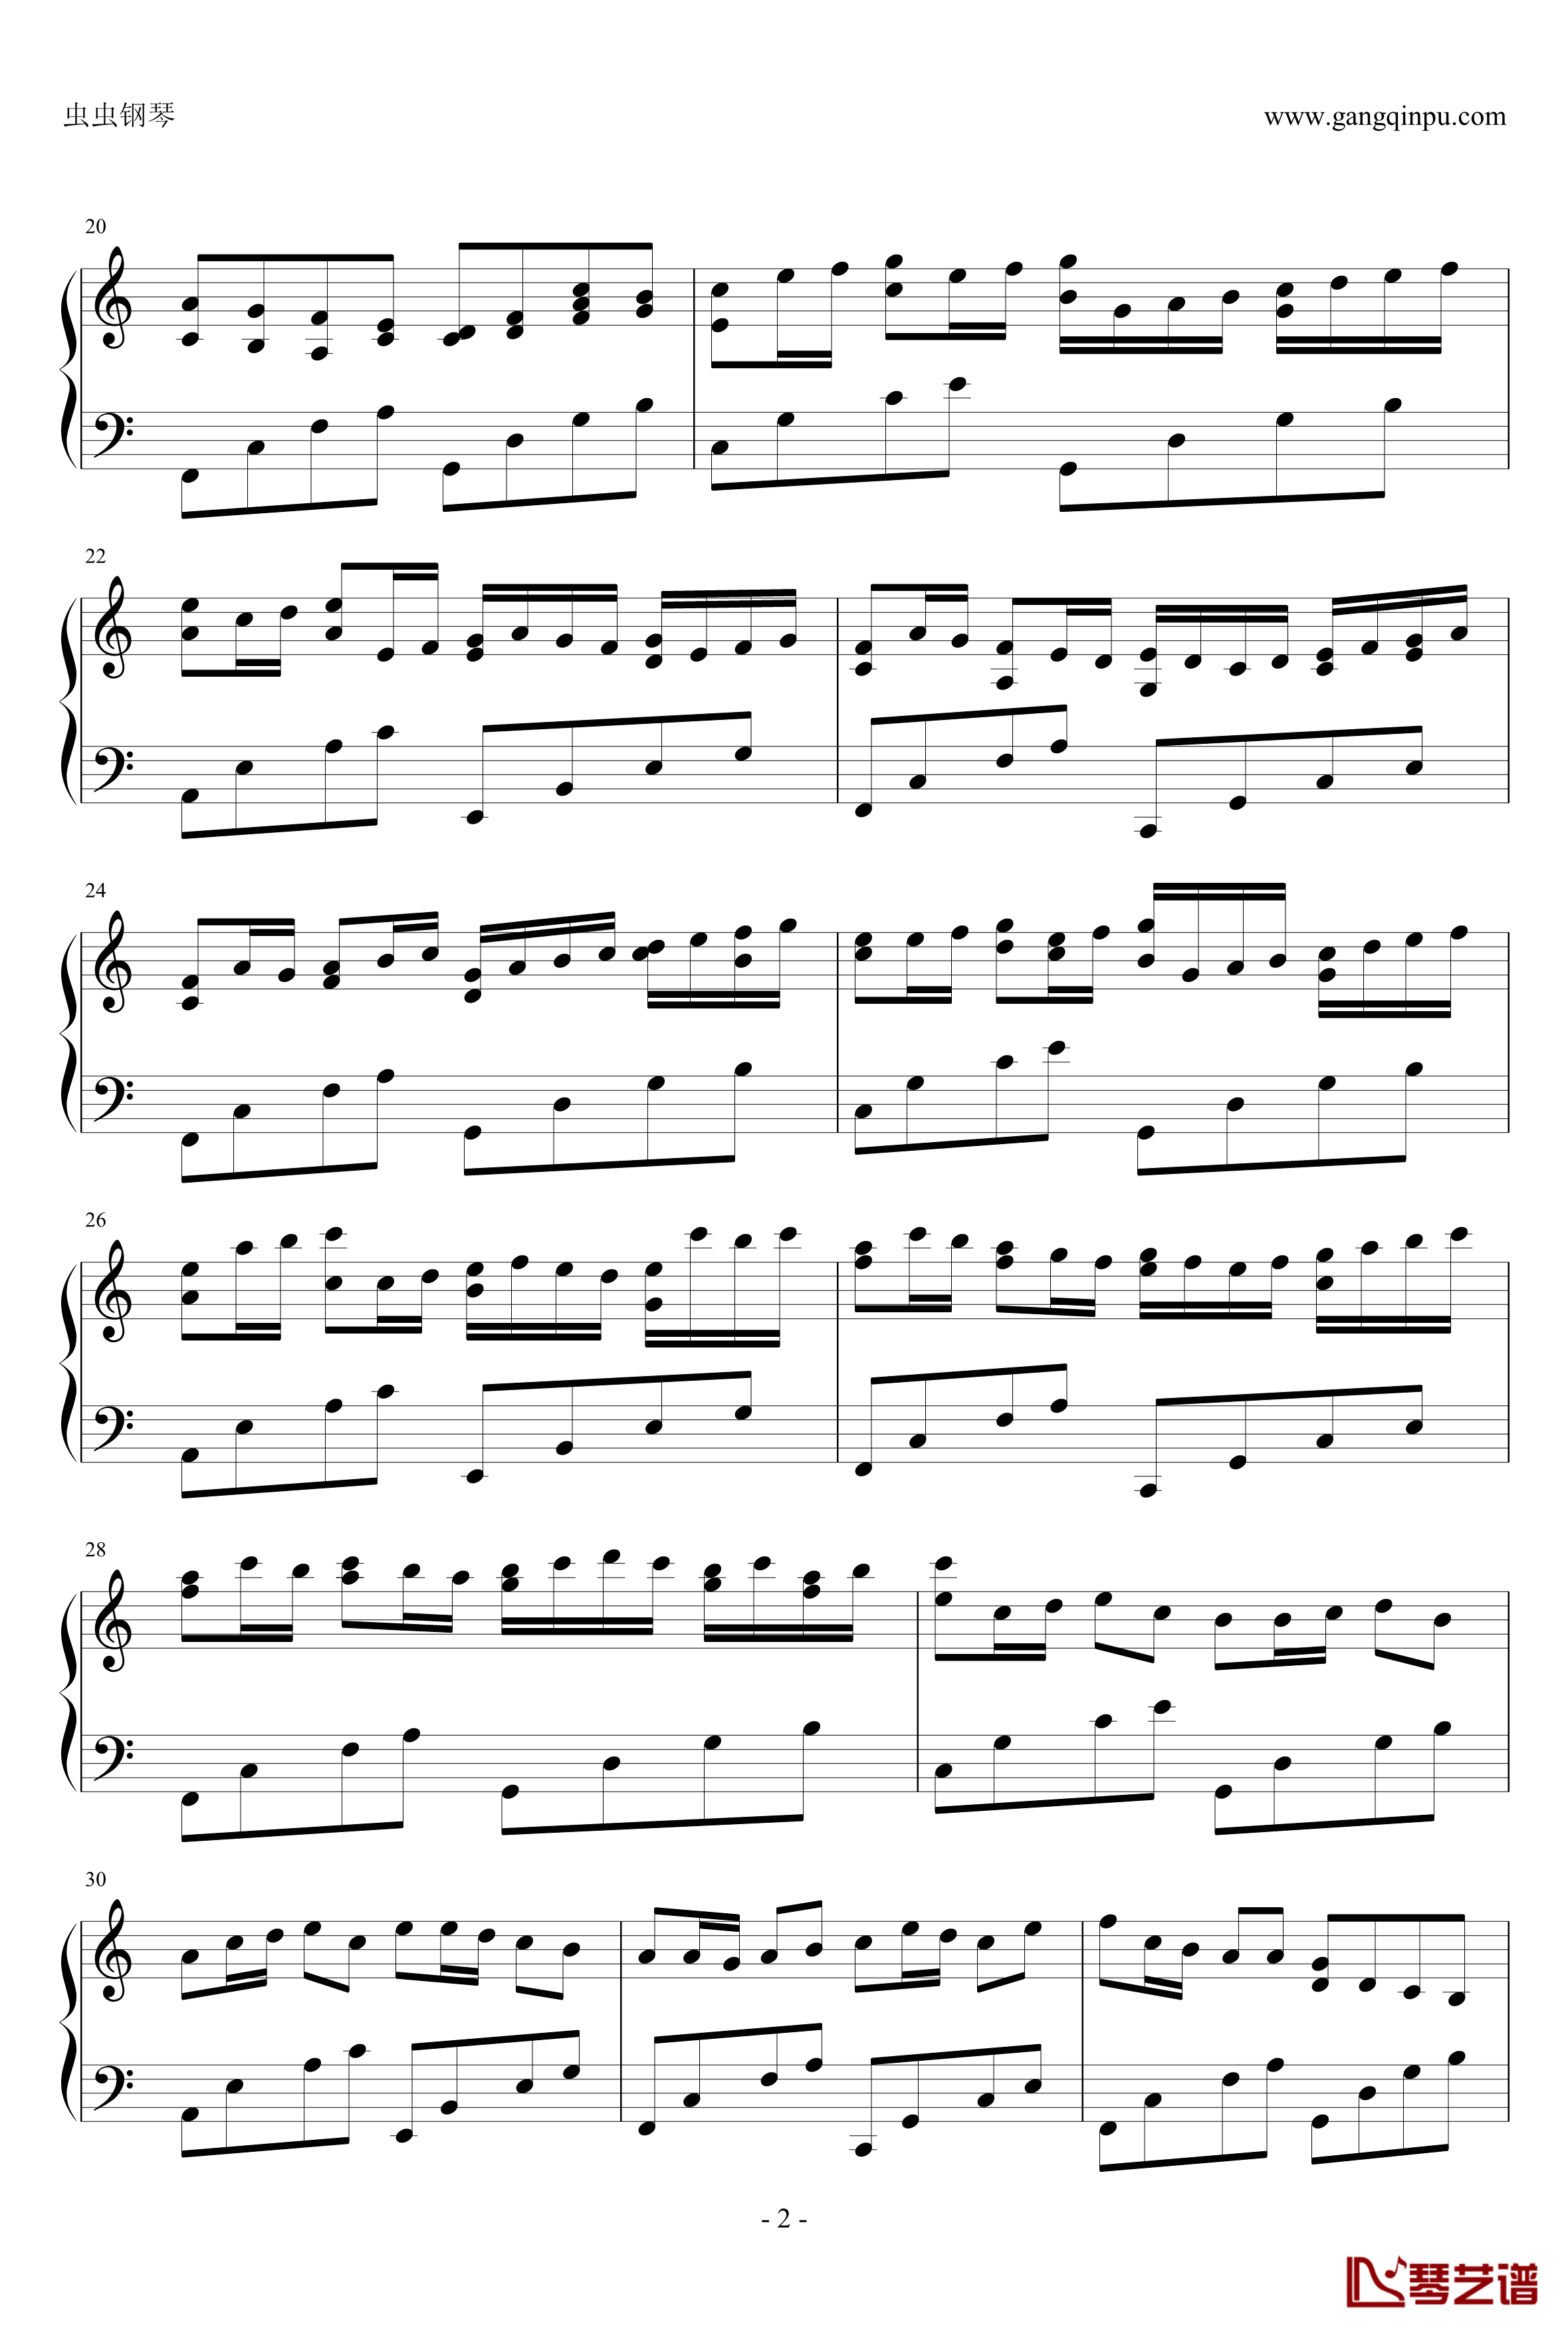 卡农疯狂摇滚版钢琴谱-约翰·巴哈贝尔2